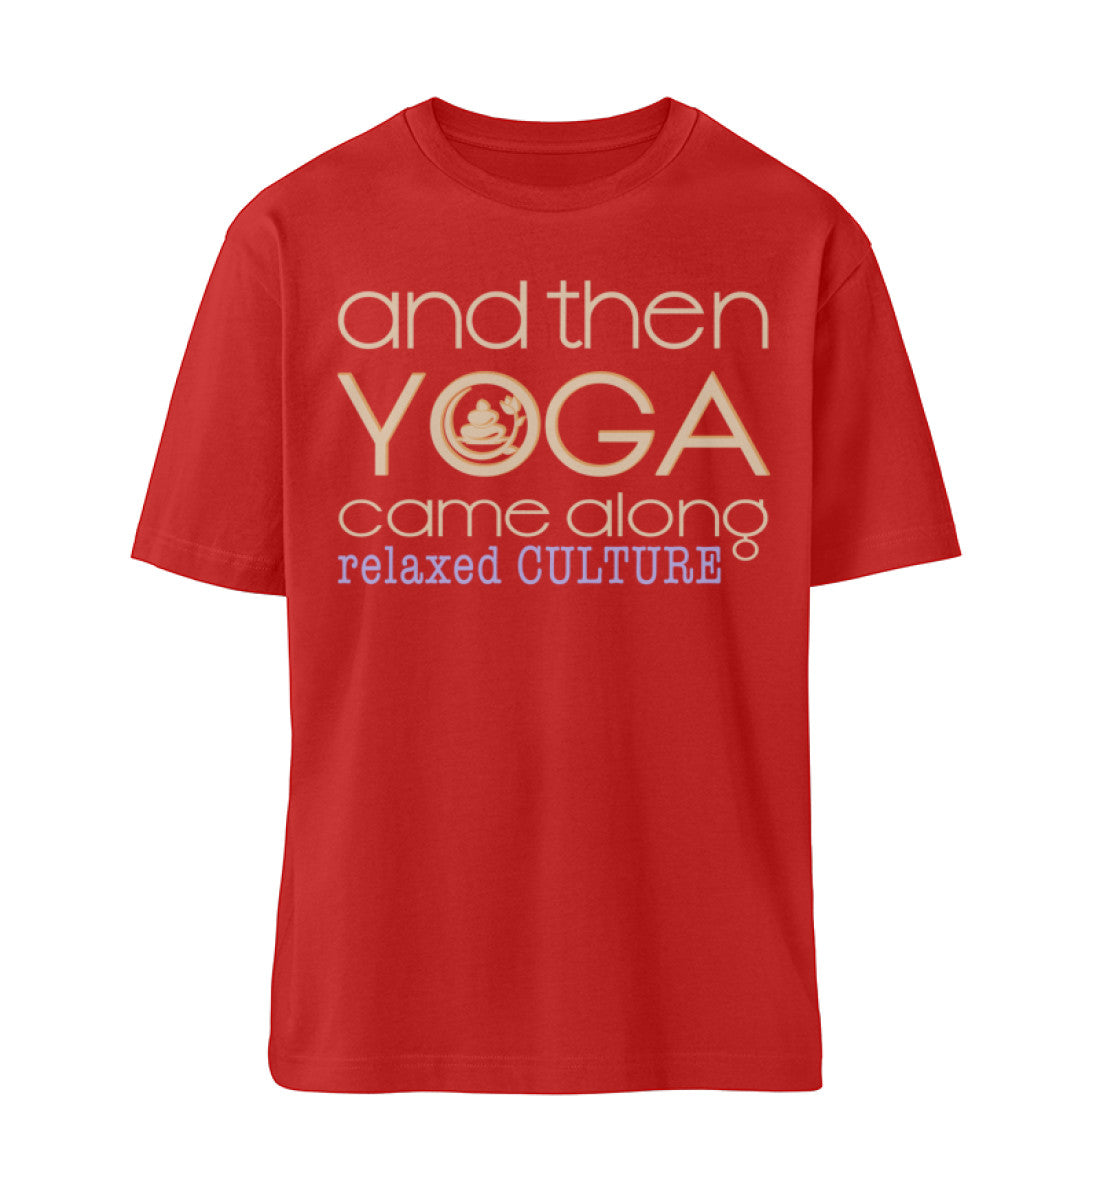 Rotes T-Shirt Unisex Relaxed Fit für Frauen und Männer bedruckt mit dem Design der Roger Rockawoo Kollektion and then yoga along